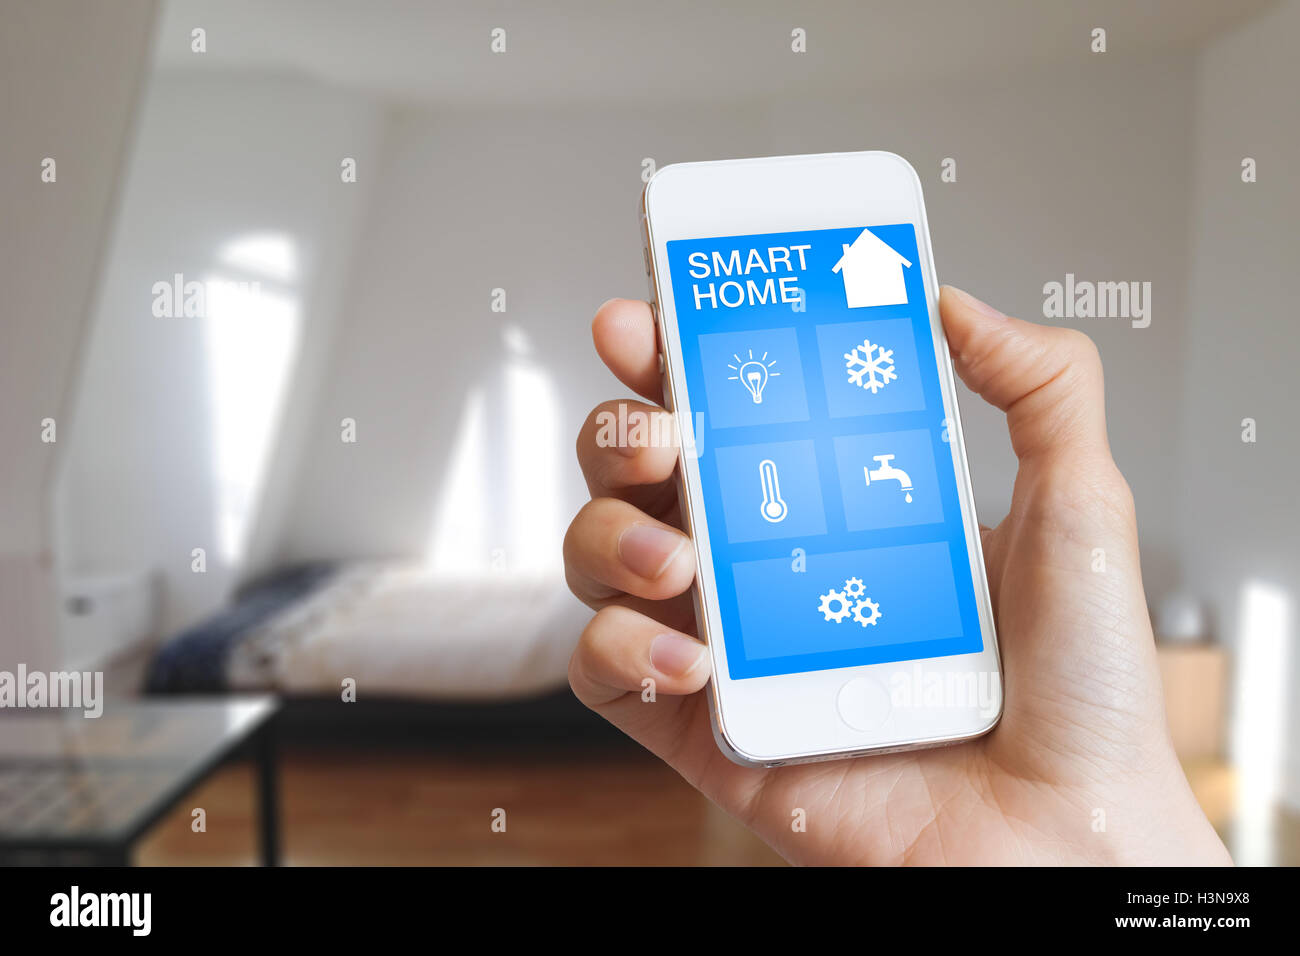 Automatización del hogar inteligente app en smartphone mantenga por mujeres con la mano interior en segundo plano. Foto de stock